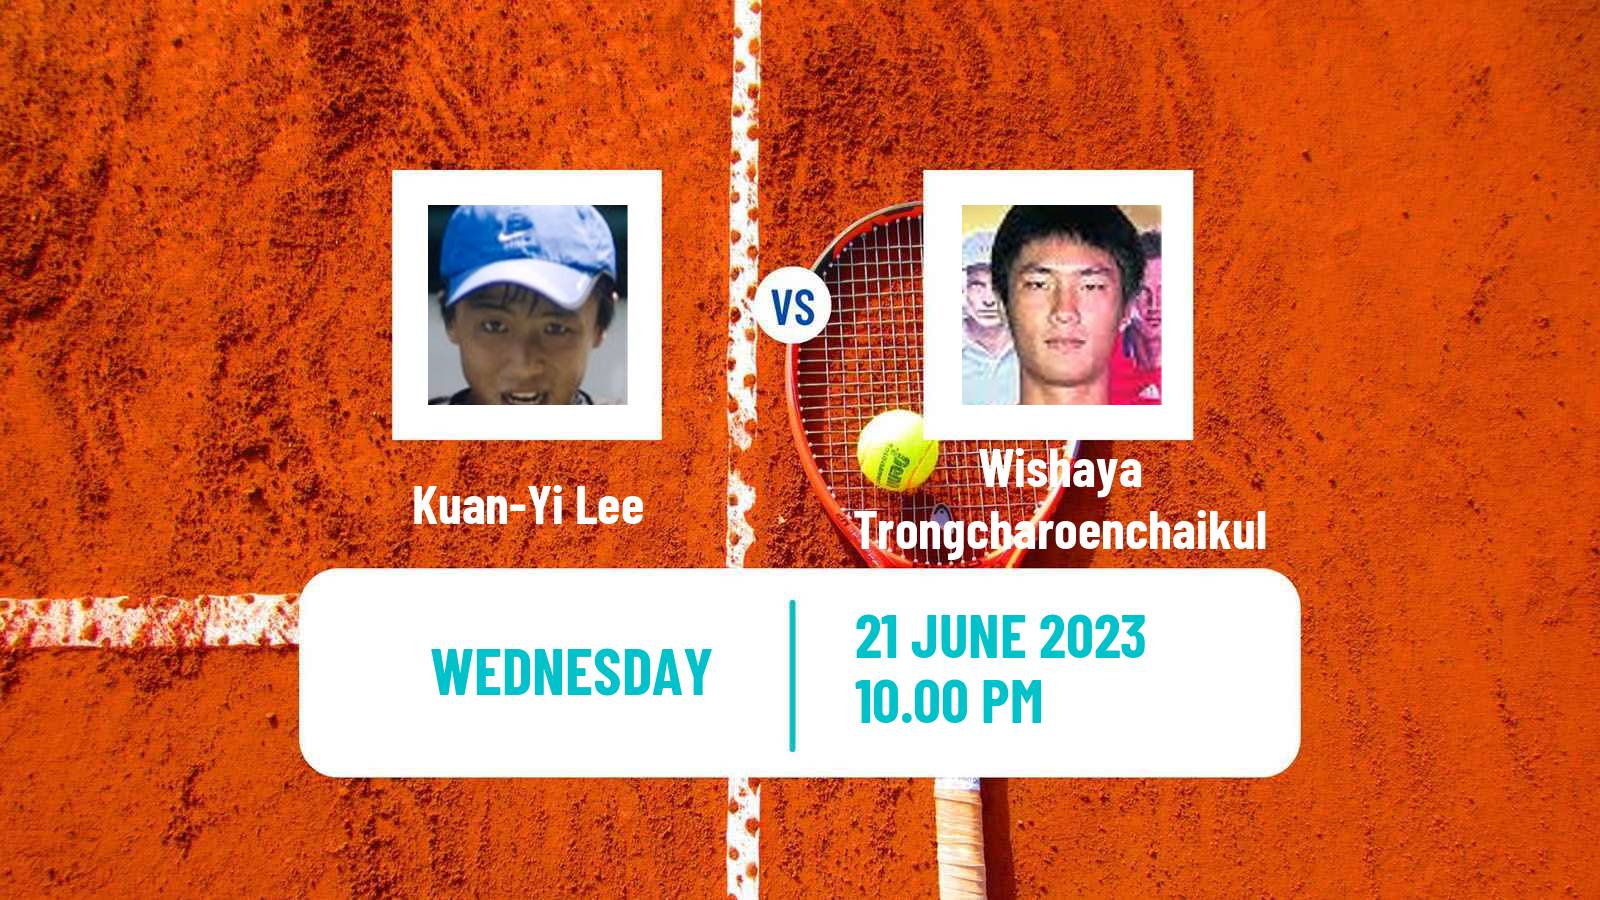 Tennis ITF M15 Tianjin 2 Men Kuan-Yi Lee - Wishaya Trongcharoenchaikul